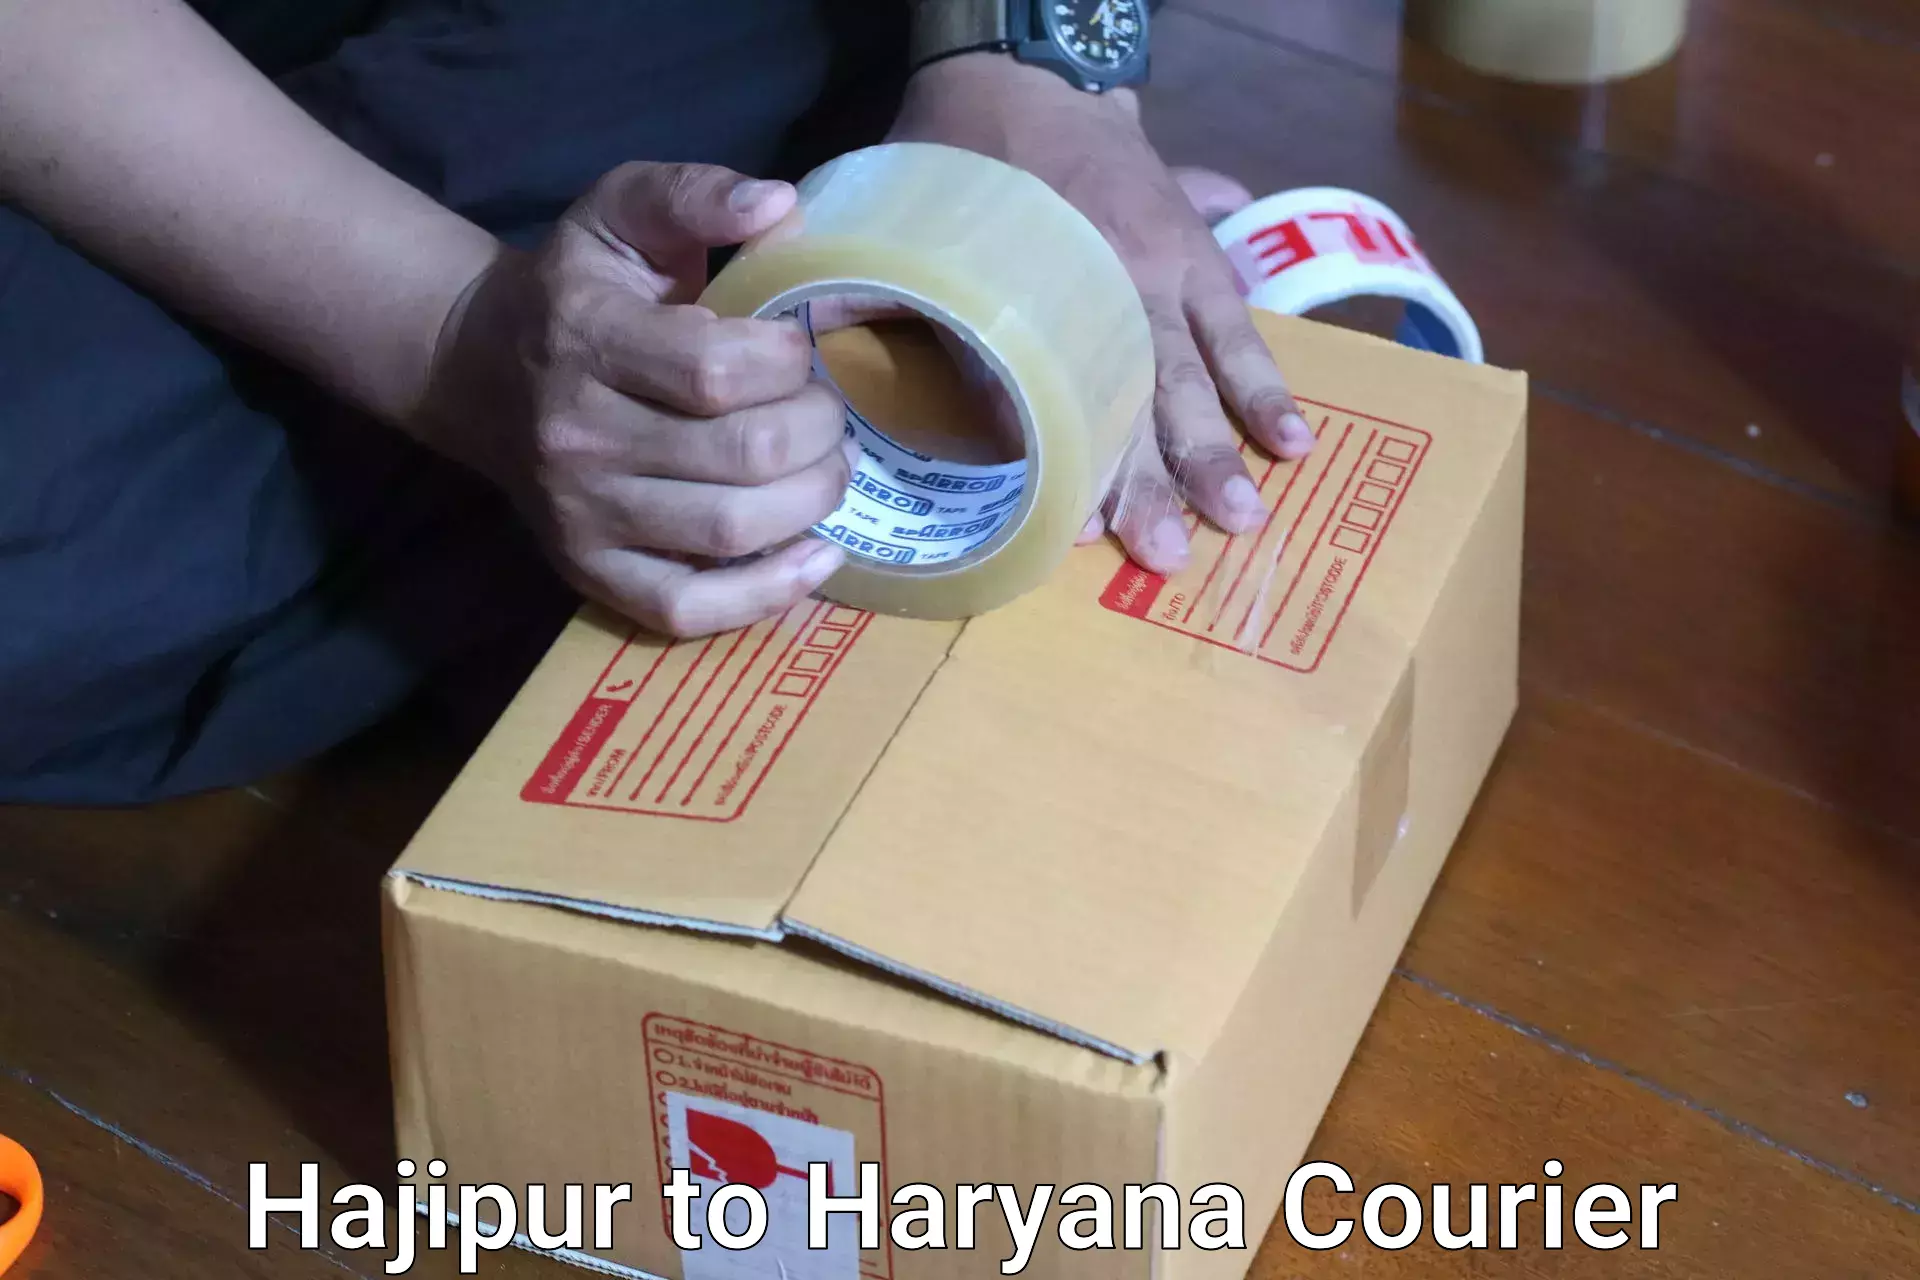 Baggage shipping quotes Hajipur to Gurgaon